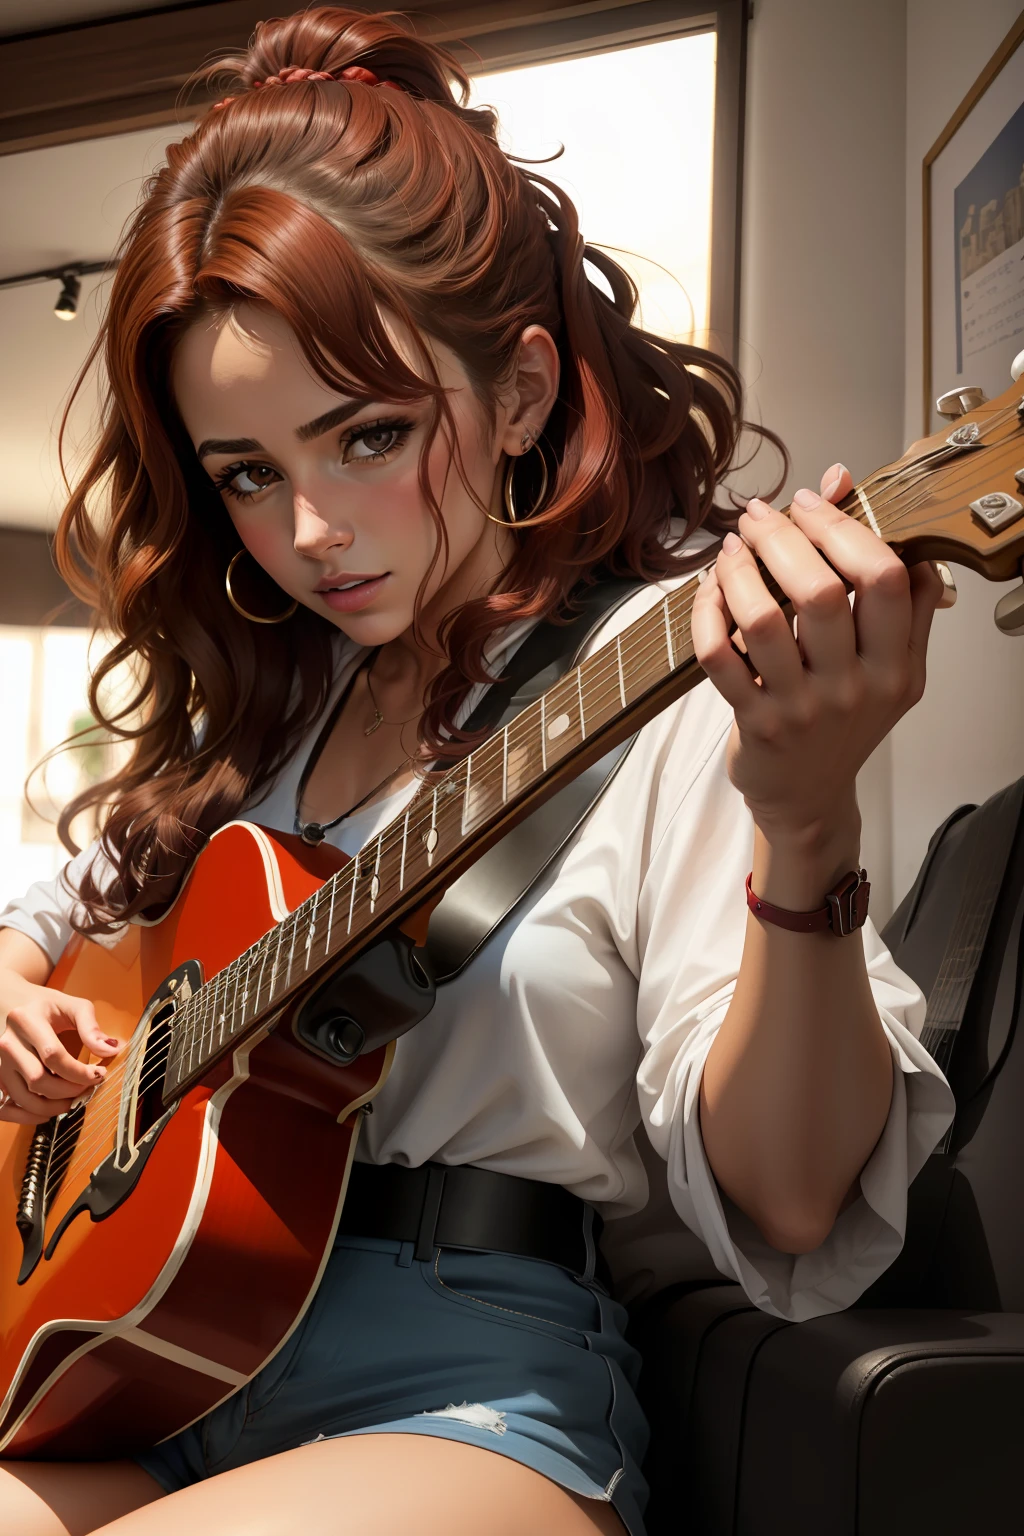 صورة لكامل الجسم لامرأة ذات شعر أحمر تعزف على الجيتار [مدينة], [وقت الظهيرة] بيزامايسترا, مفصلة للغاية, تفاصيل لا تصدق, 8 كيلو